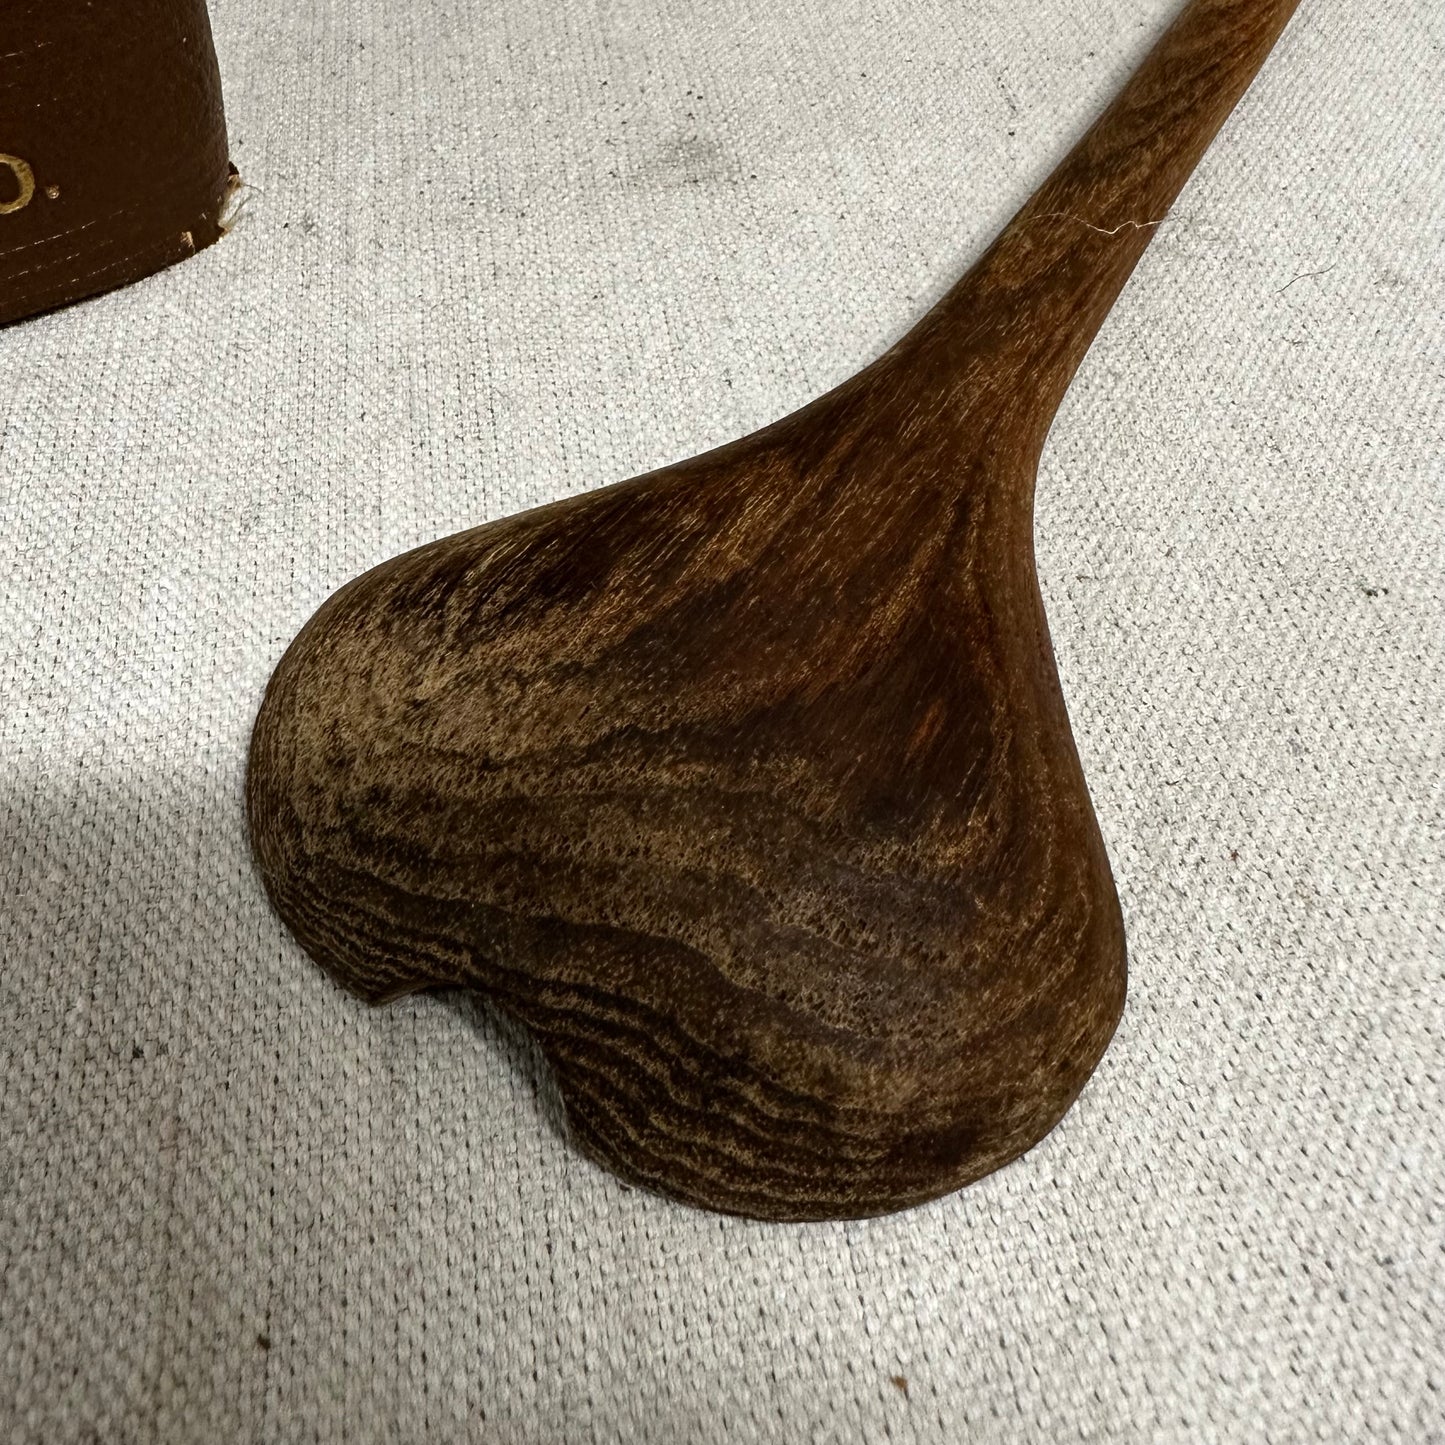 Heart Shaped Wooden Spoon